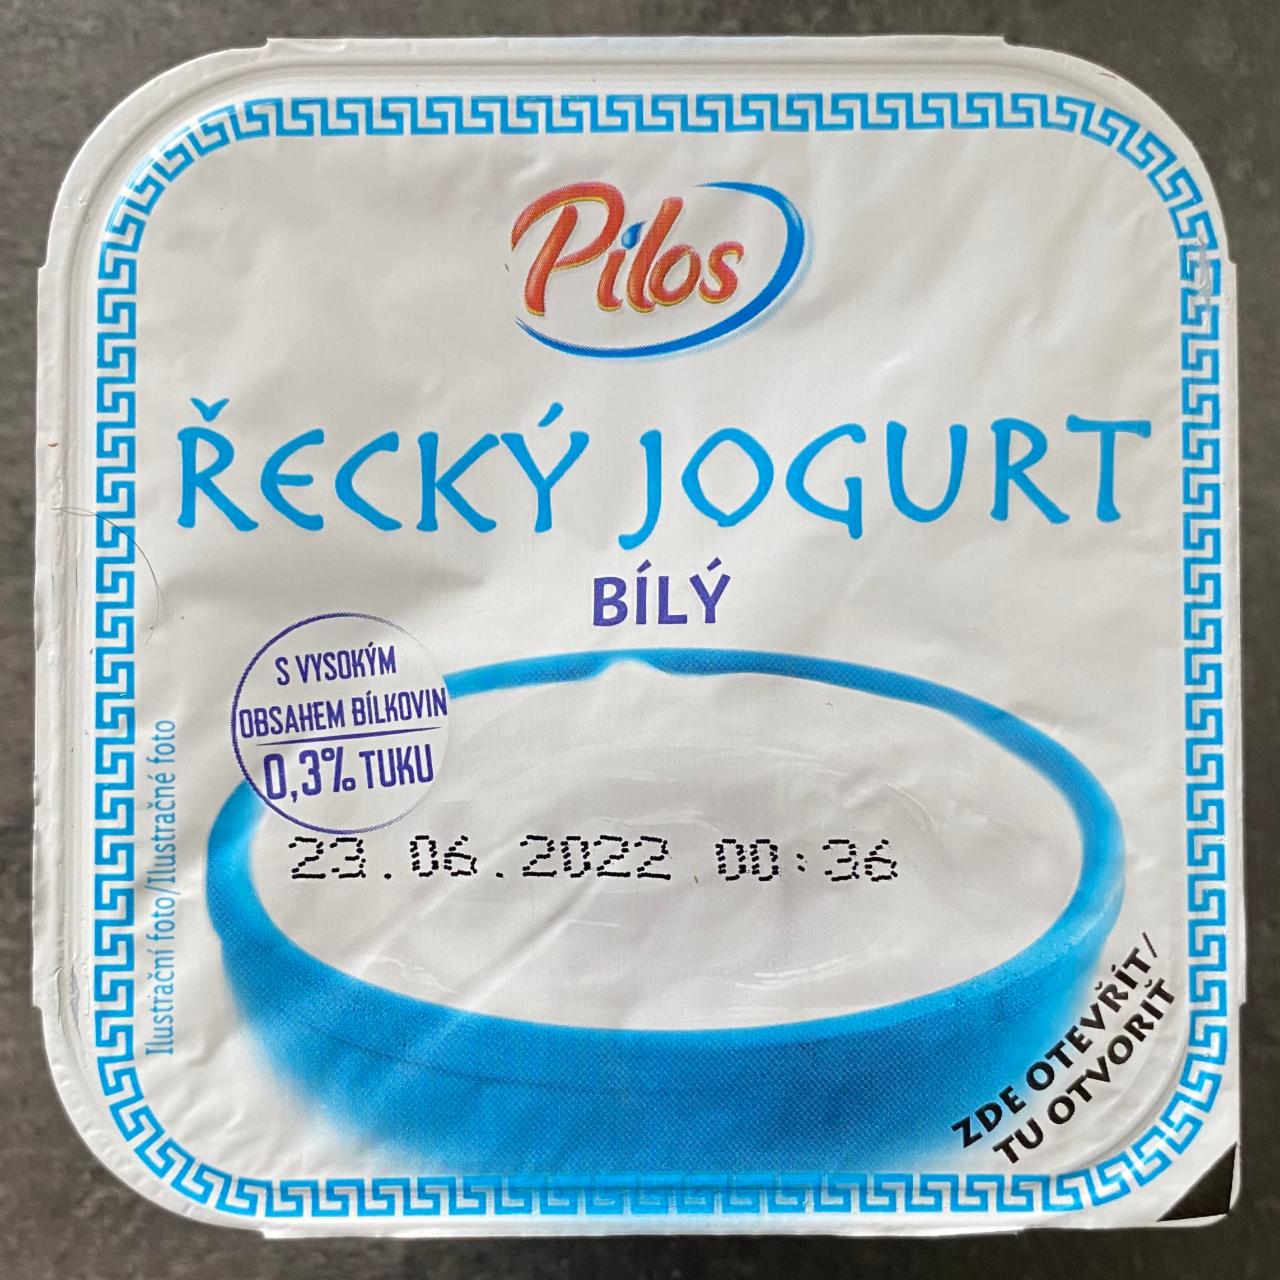 Фото - Грецький йогурт 0,3% Pilos